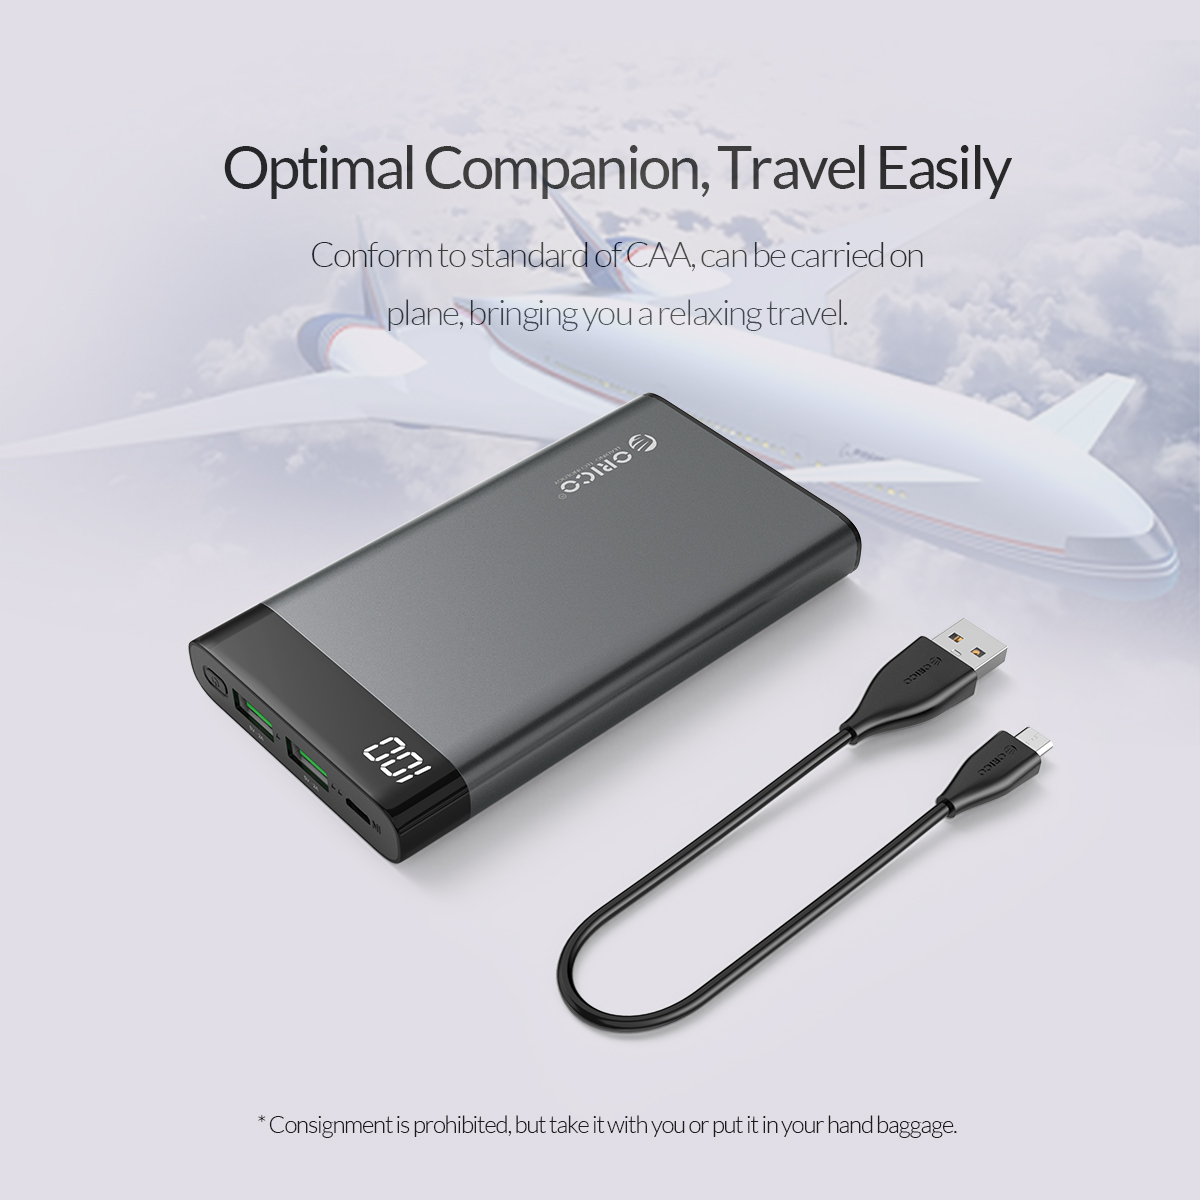 Optimal companion travel easily